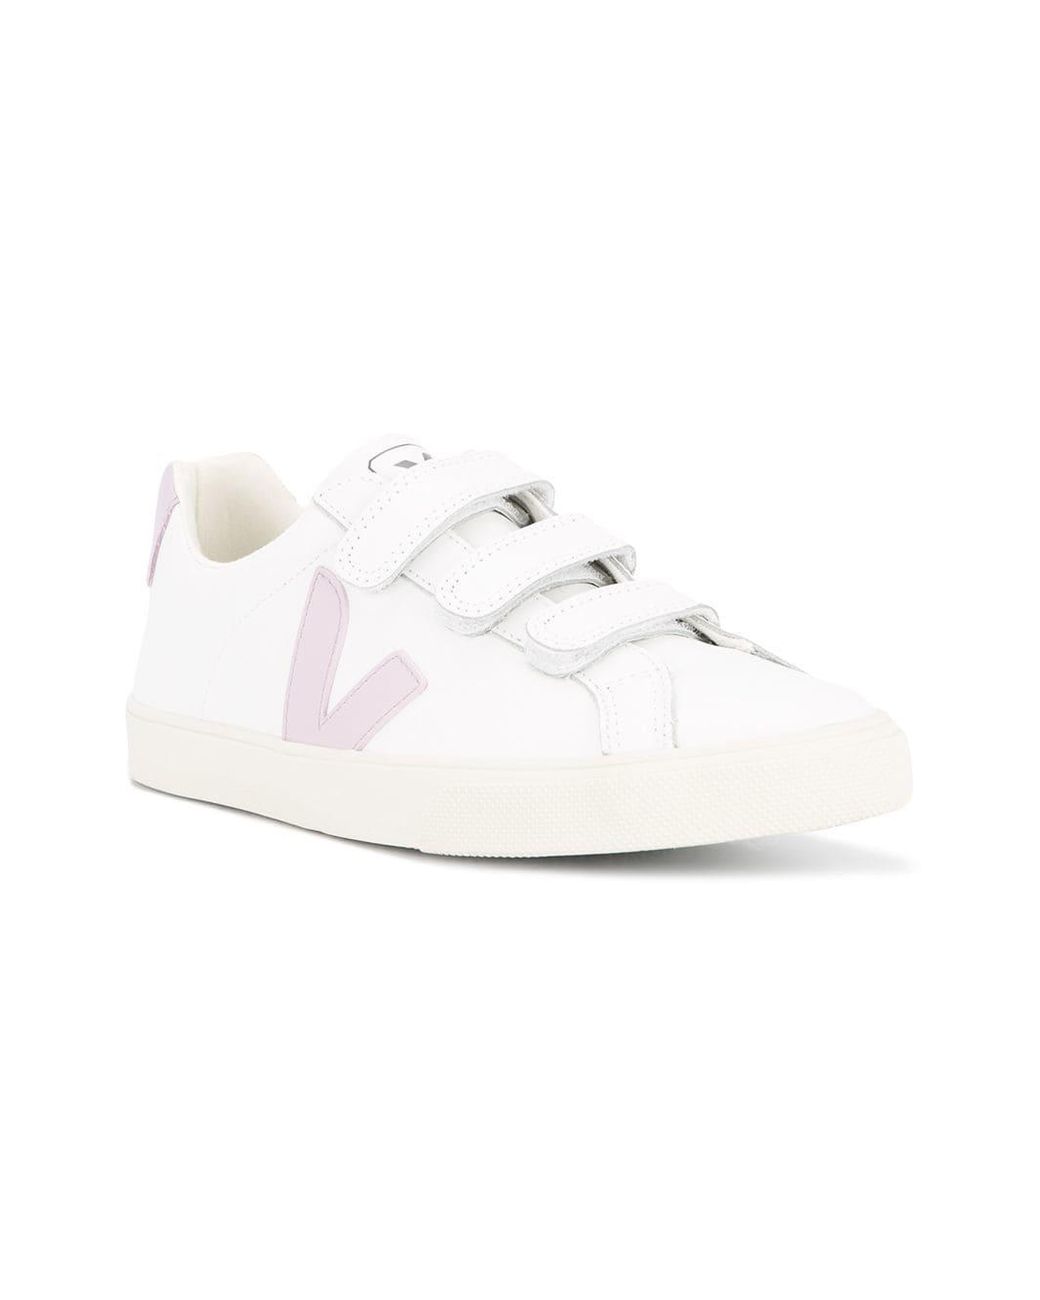 Veja Velcro Sneakers in White | Lyst